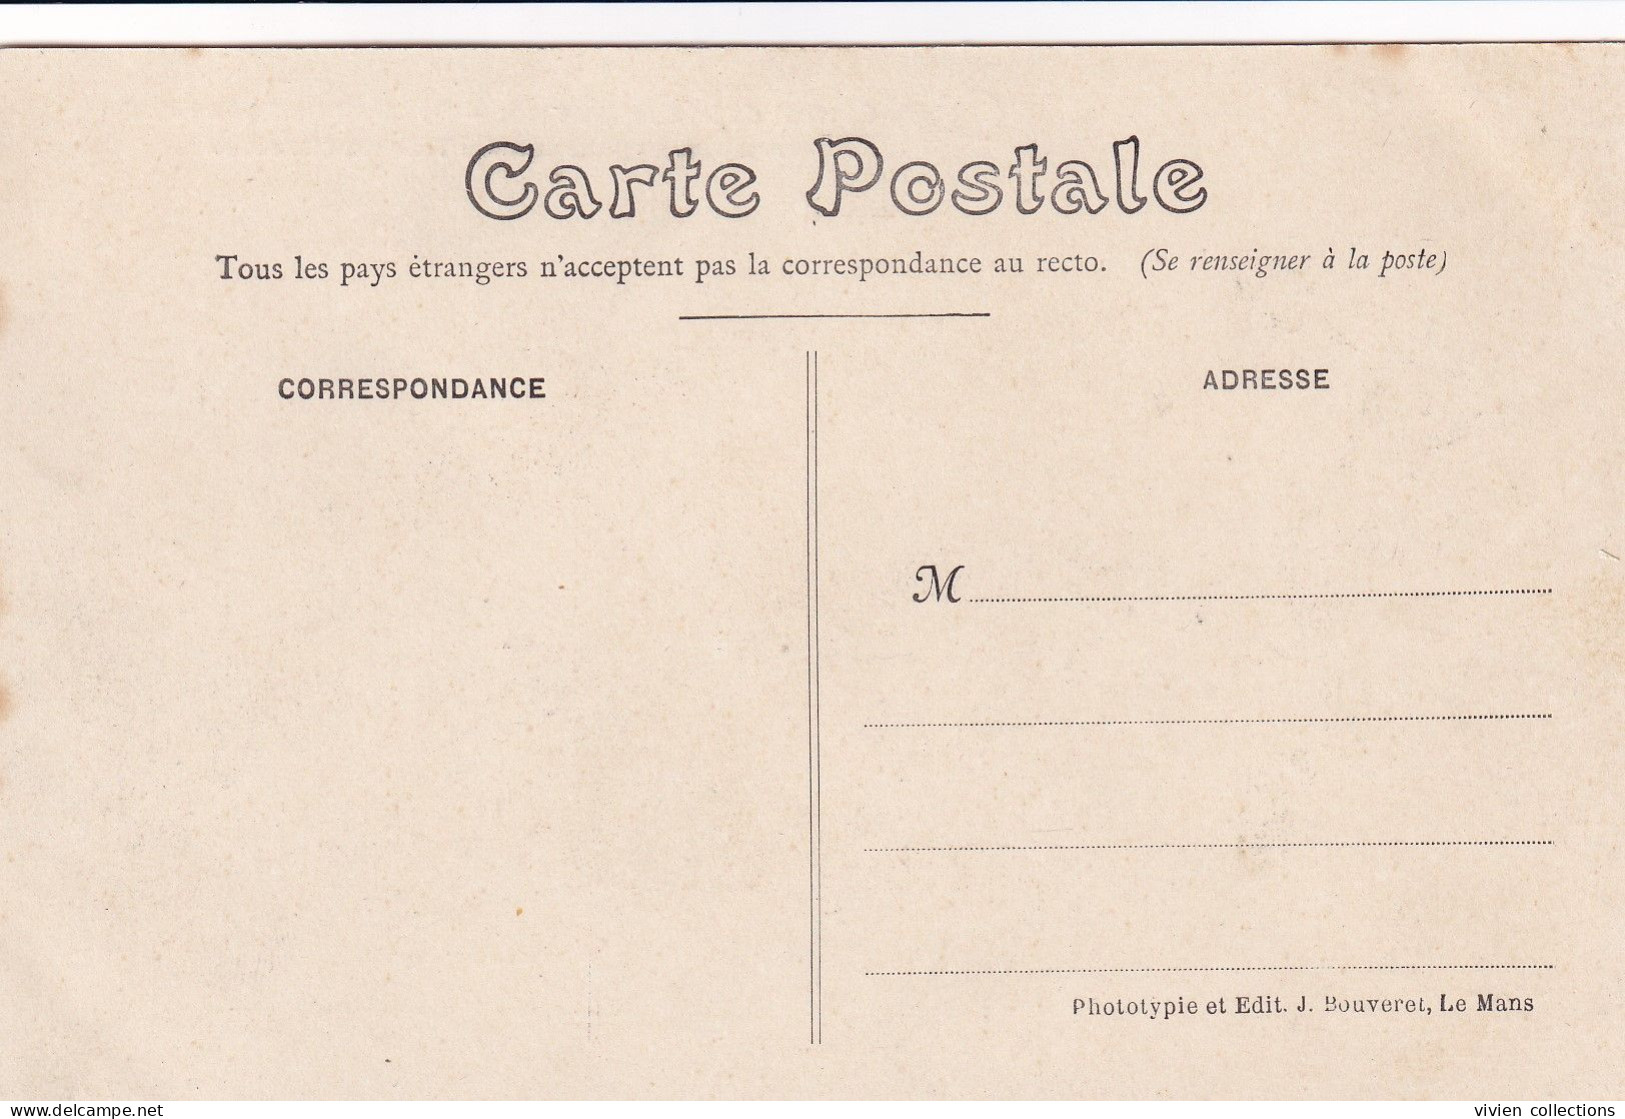 Série complète des 26 cartes édit. J. B. Course automobile circuit de la Sarthe 1906 Le Mans St Calais La Ferté Bernard